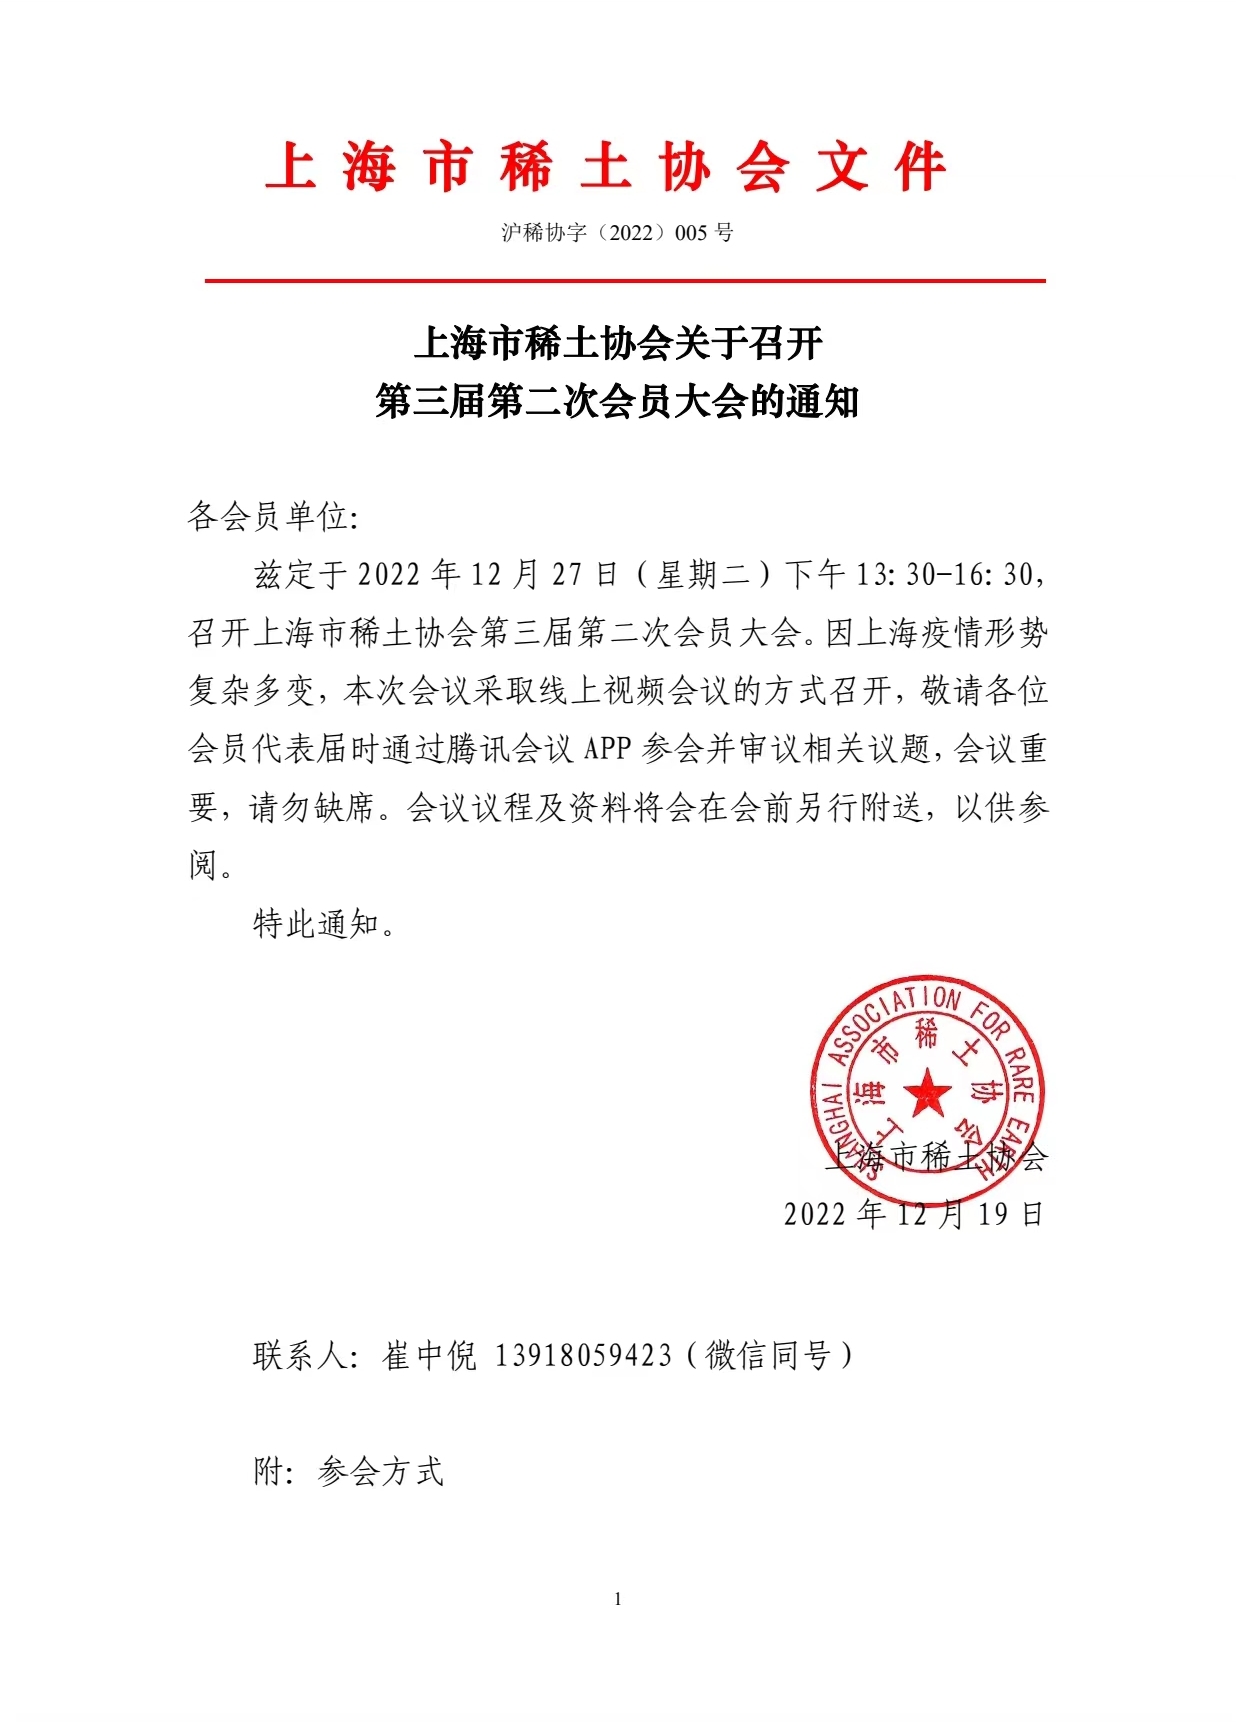 上海市稀土协会关于召开 第三届第二次会员大会的通知